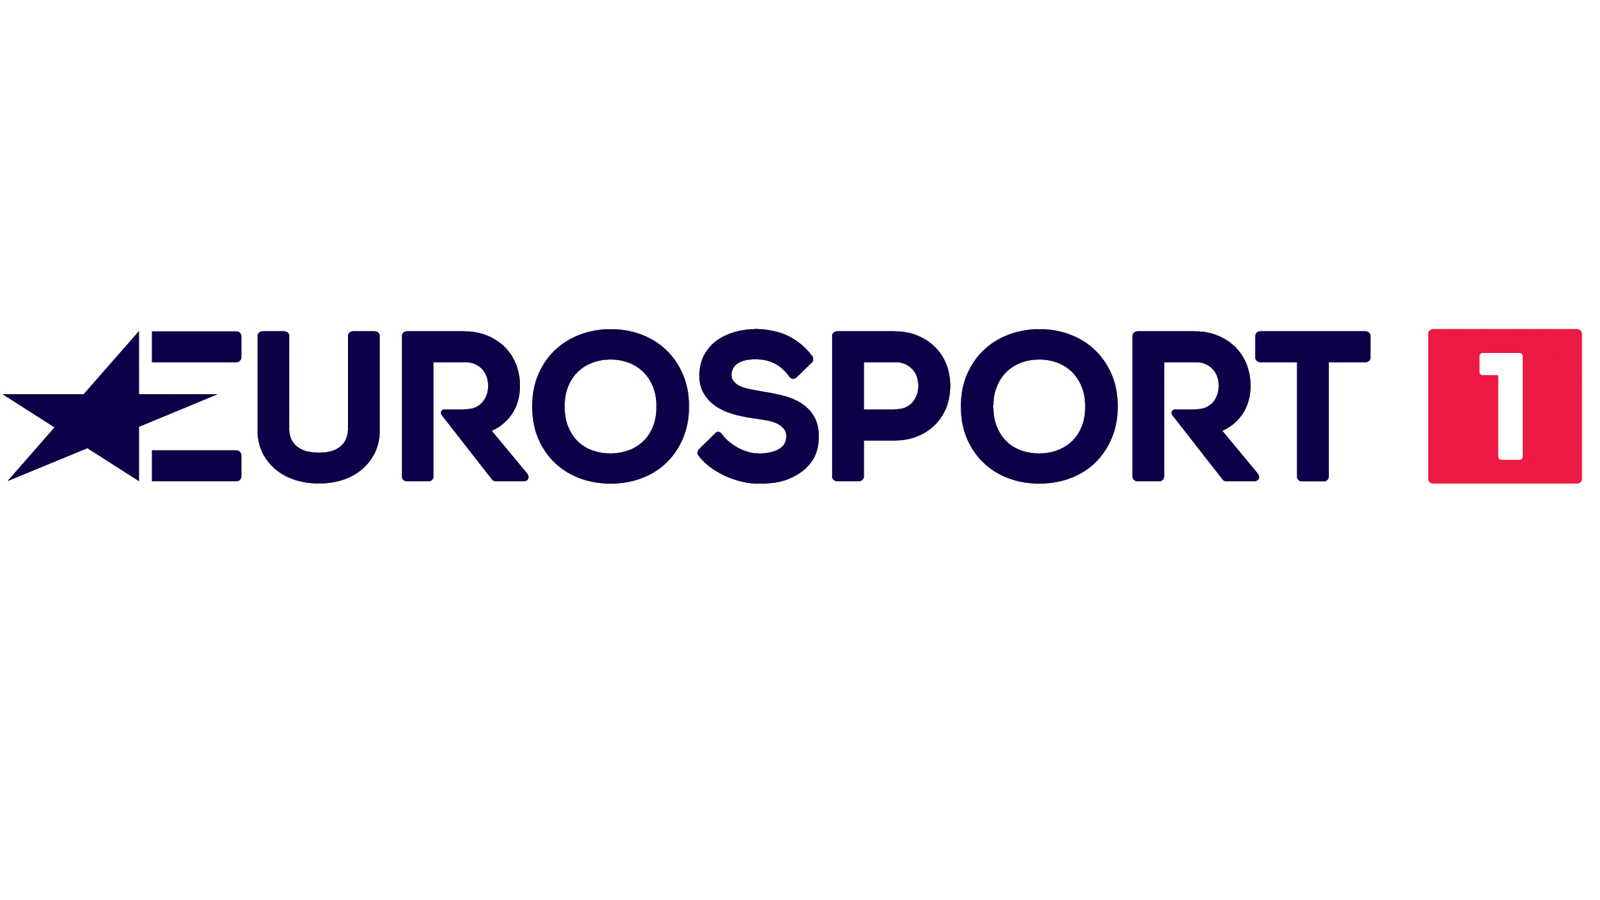 Eurosport 1 France, Eurosport 2 HD France, Eurosport 1 HD UK, Eurosport 2 UK, Eurosport 1 Deutschland, Eurosport 2 HD Extra Deutschland, Eurosport 1 Polska, Eurosport 2 Polska, Eurosport 1 Italia, Eurosport 2 Italia, Regarder France TV en direct